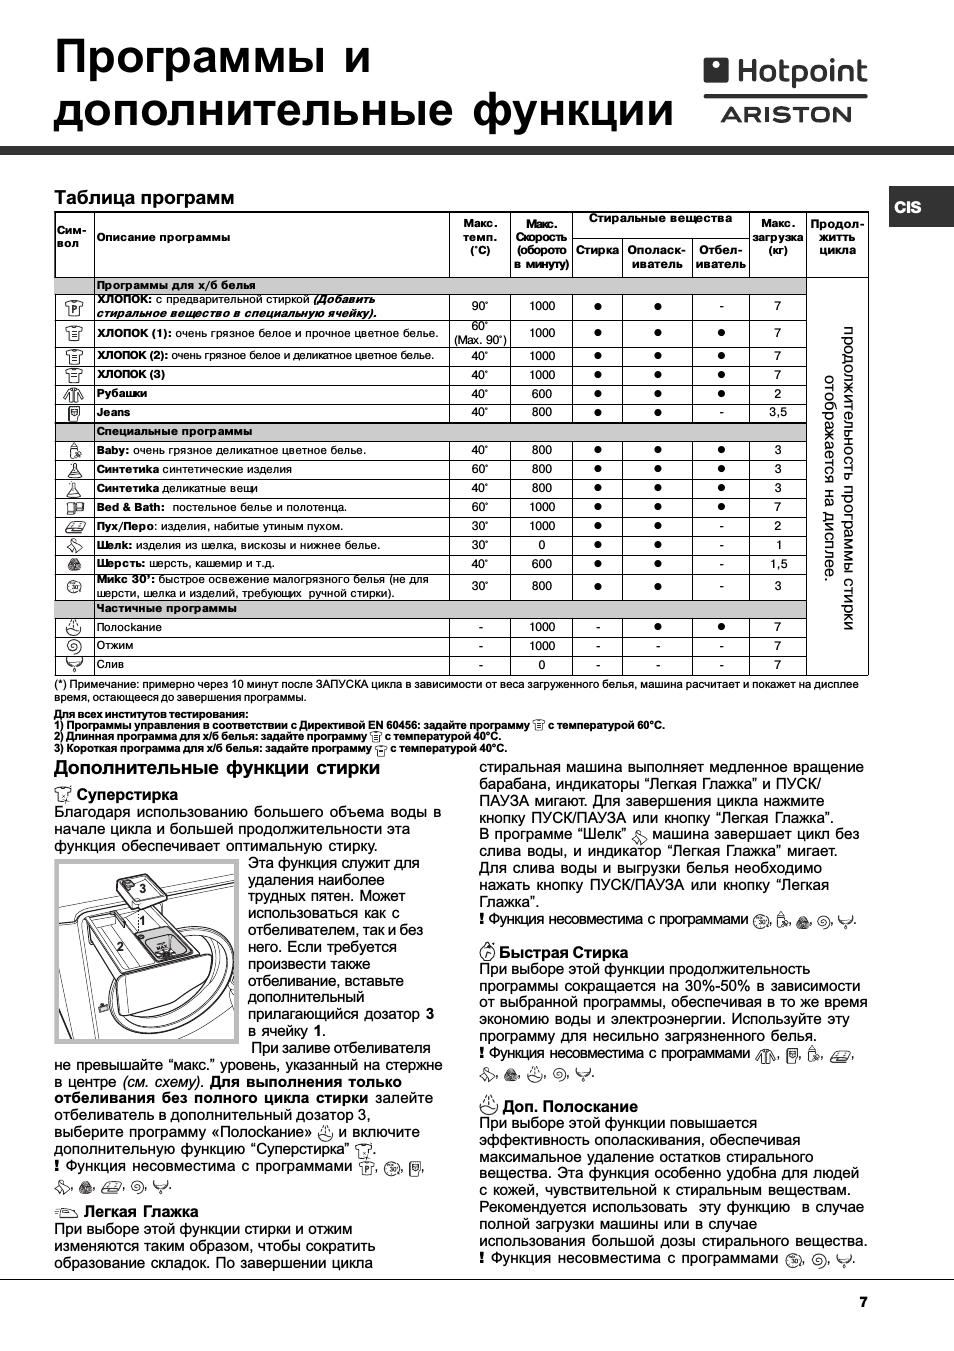 Hotpoint ariston arusl 85: инструкция и руководство на русском